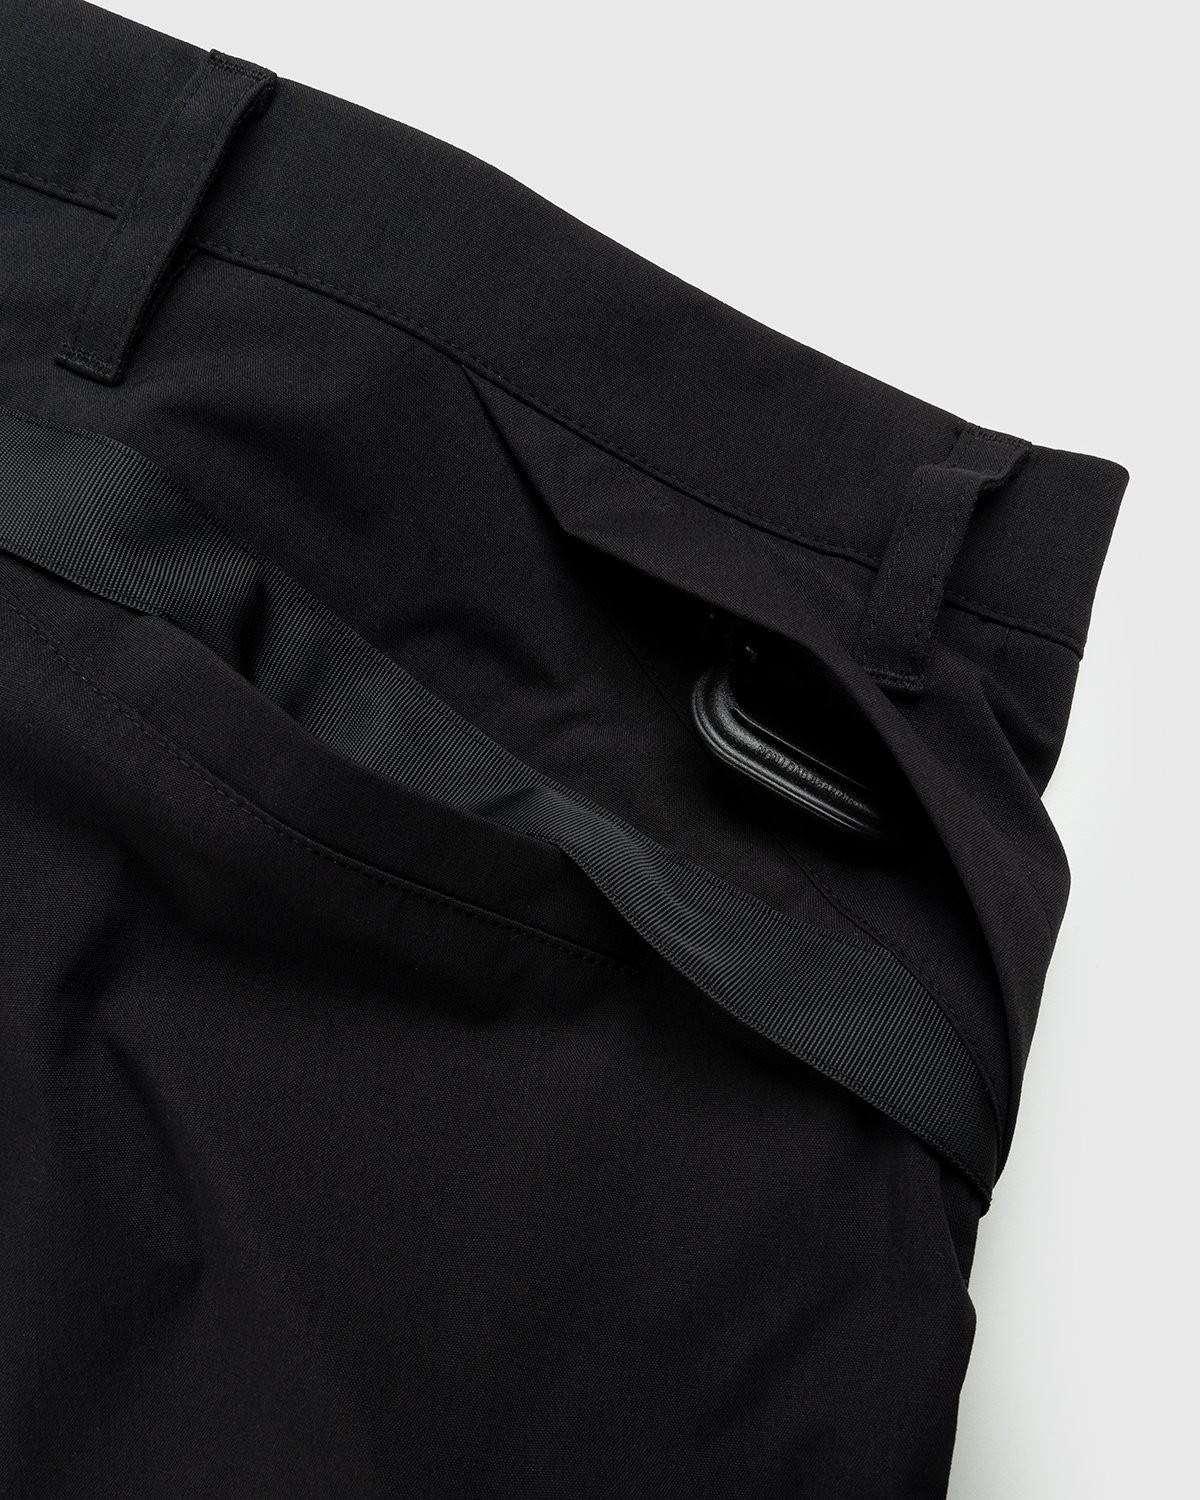 ACRONYM – P10A-E Cargo Pants Black | Highsnobiety Shop